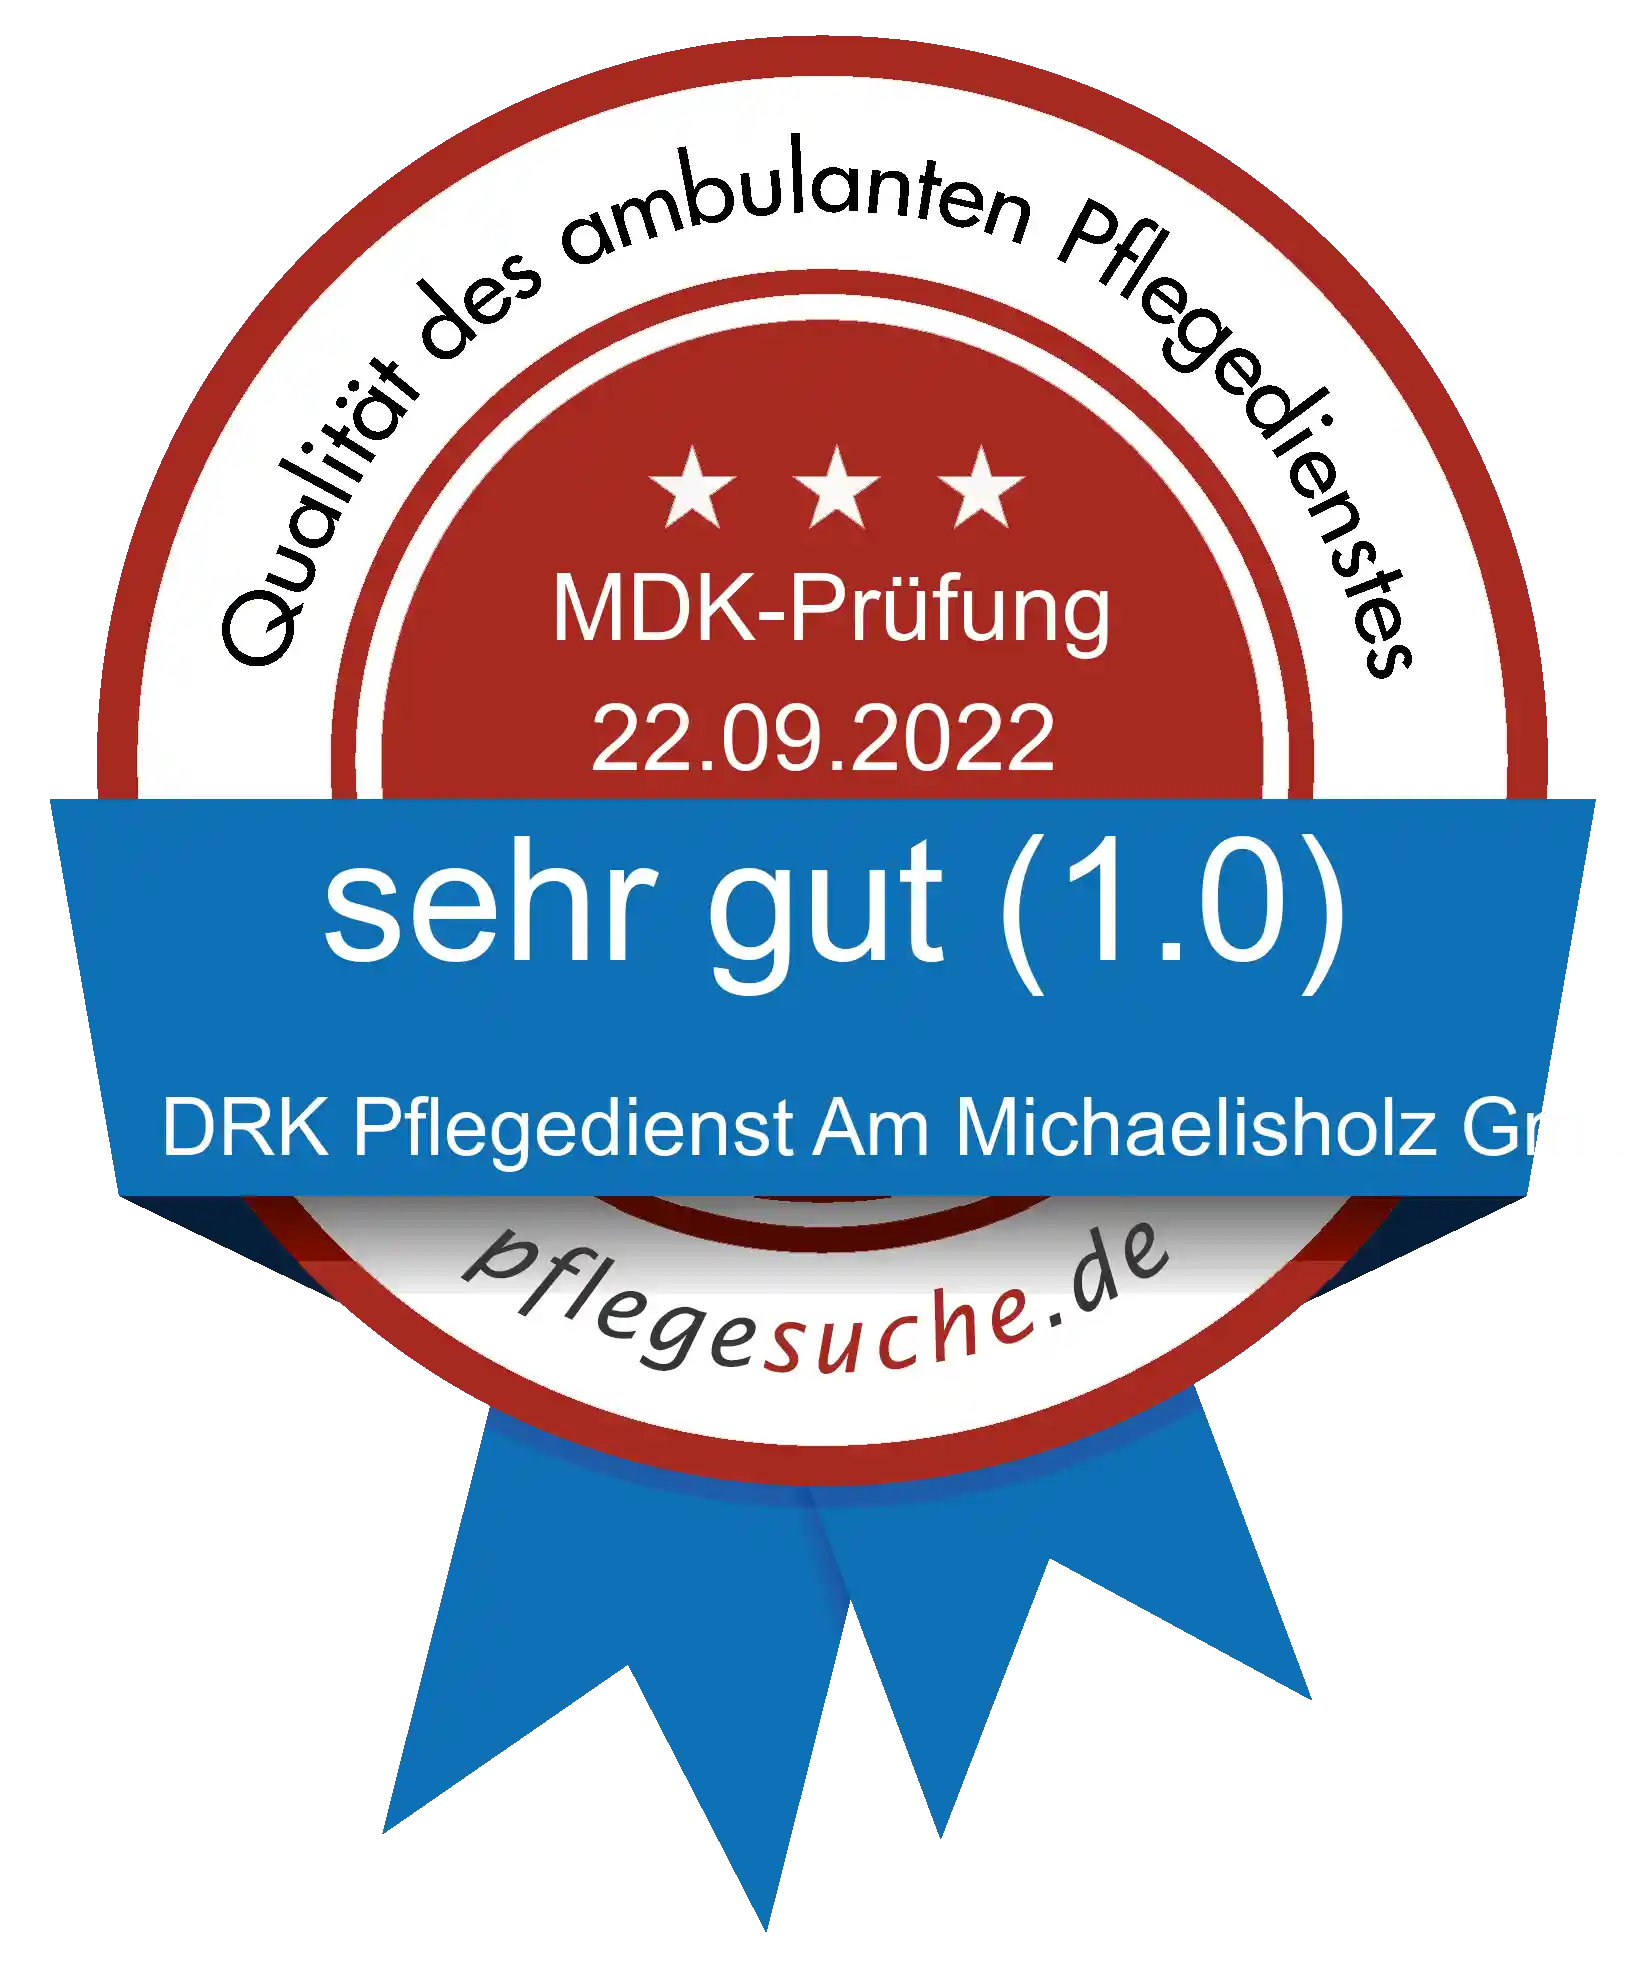 Siegel Benotung DRK Pflegedienst Am Michaelisholz GmbH